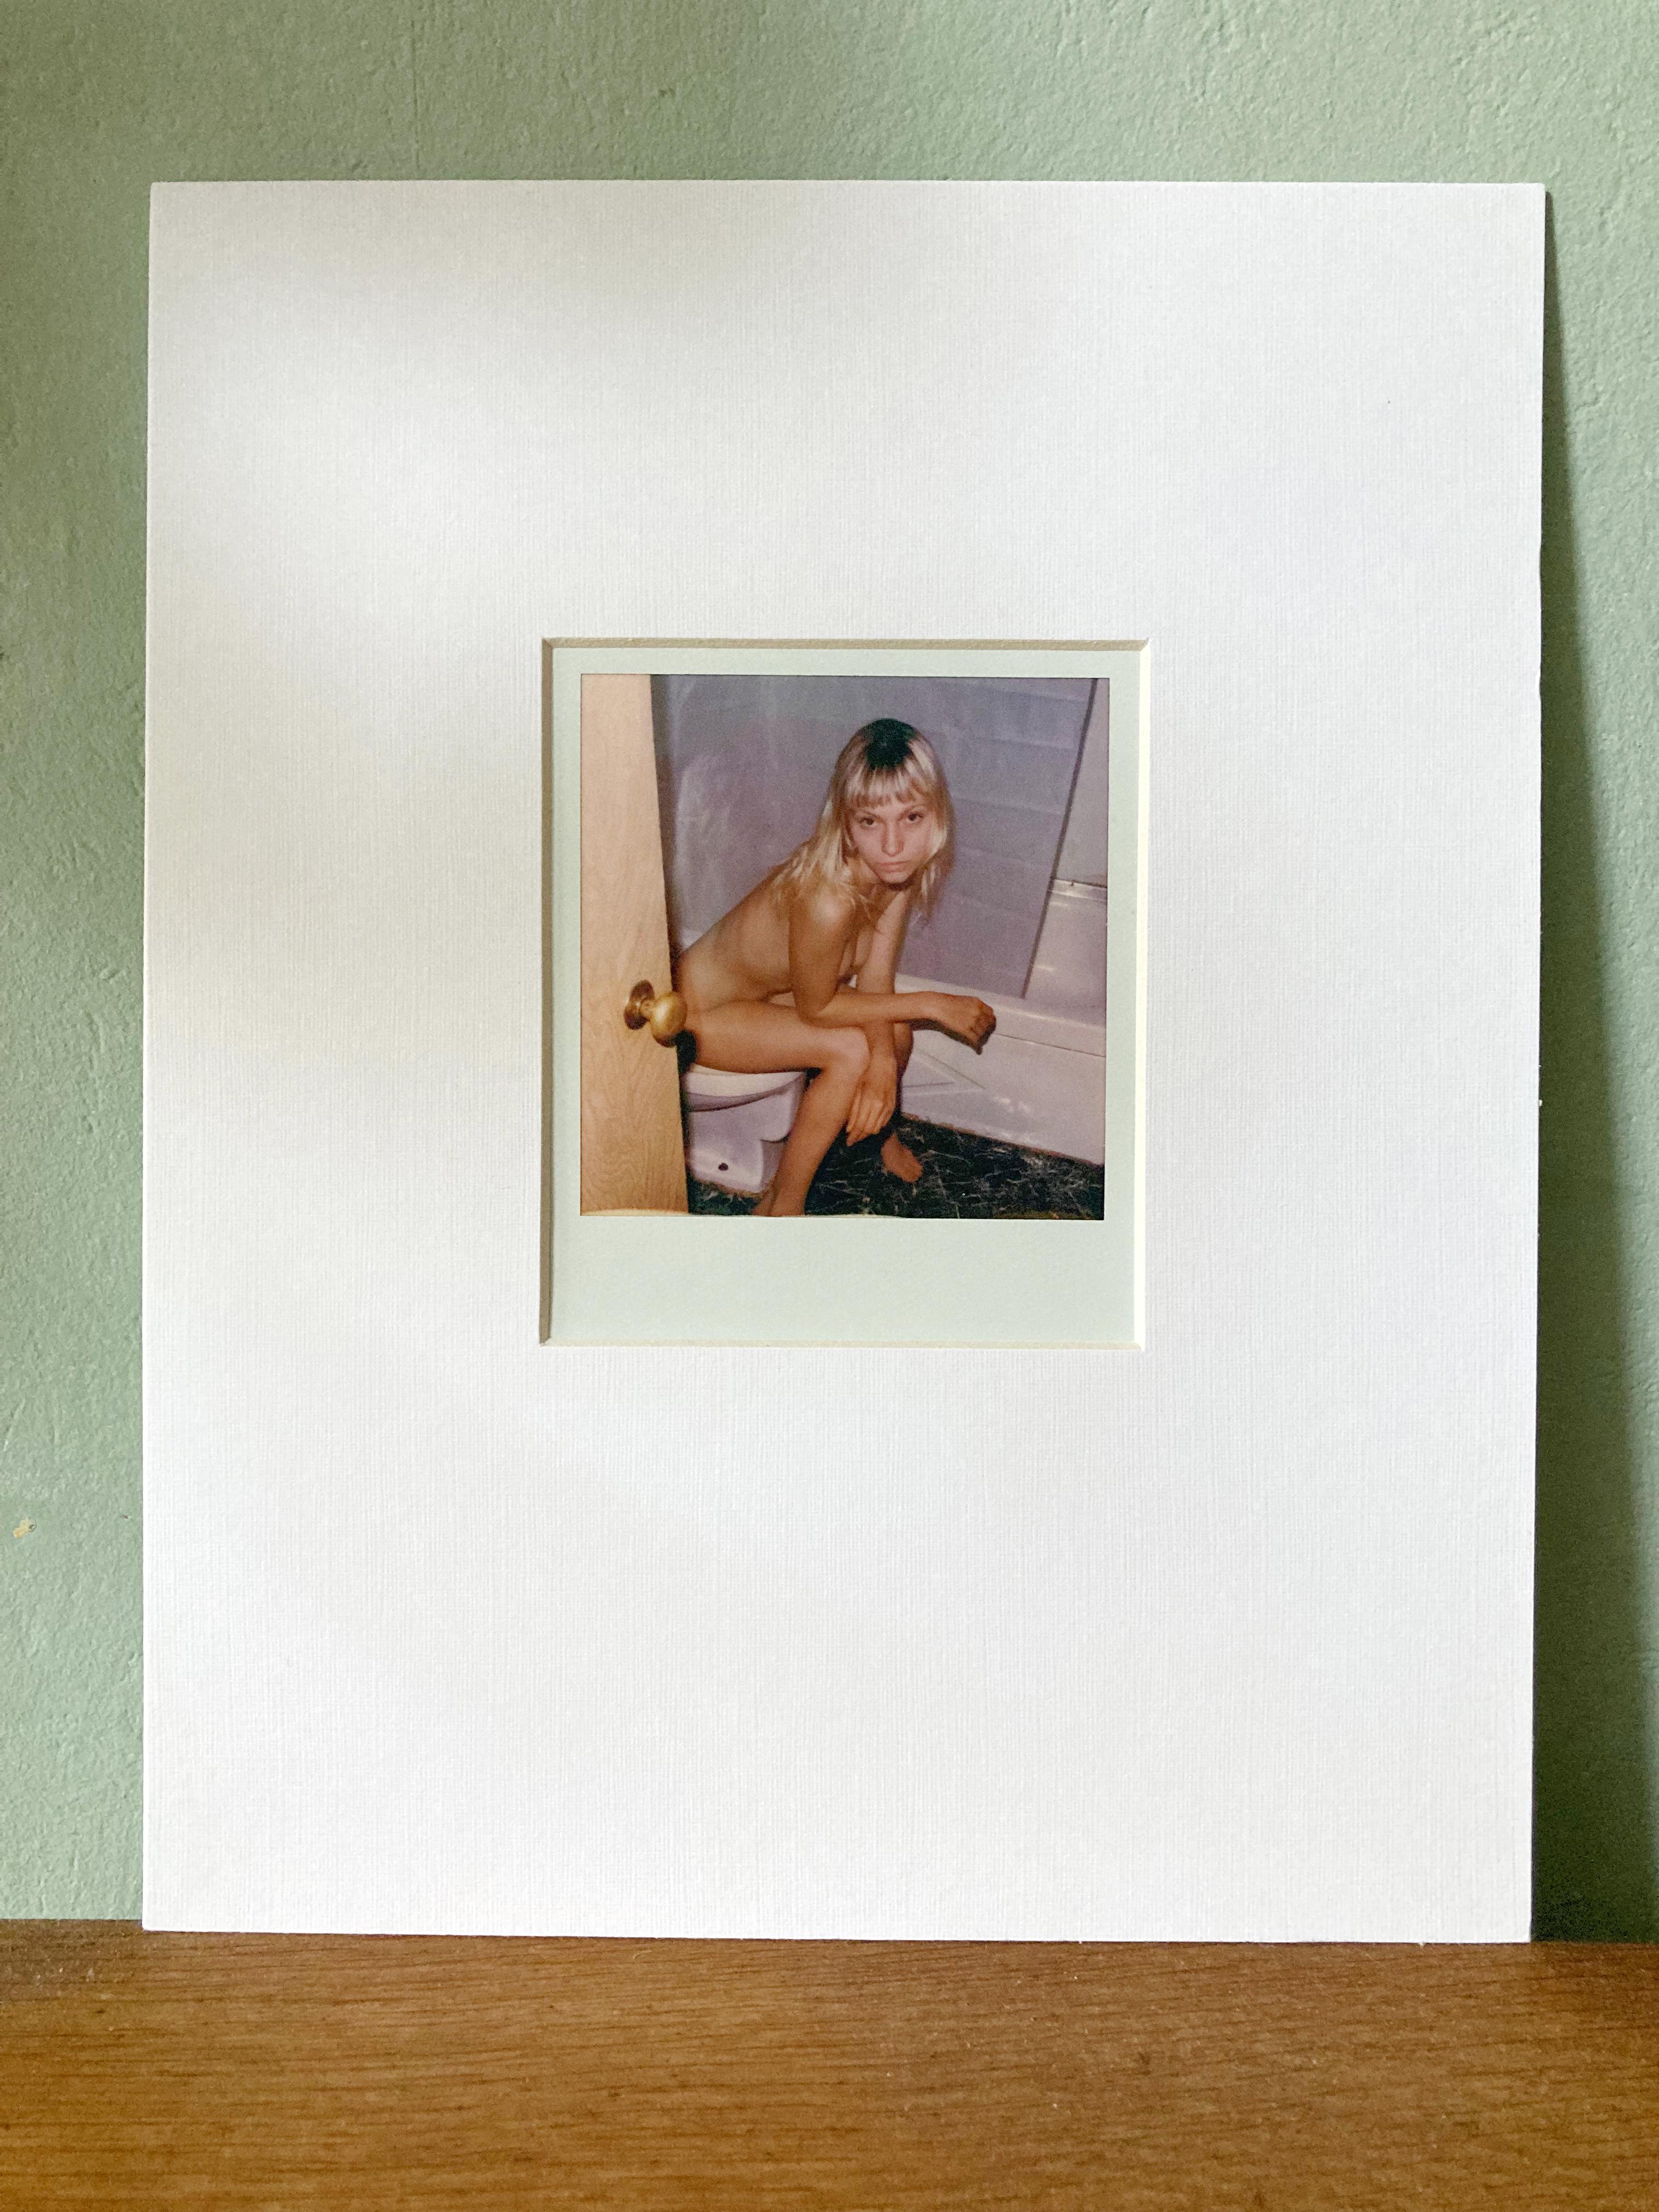 Golden Brown - Polaroid - Unique piece - Contemporary Photograph by Kirsten Thys van den Audenaerde